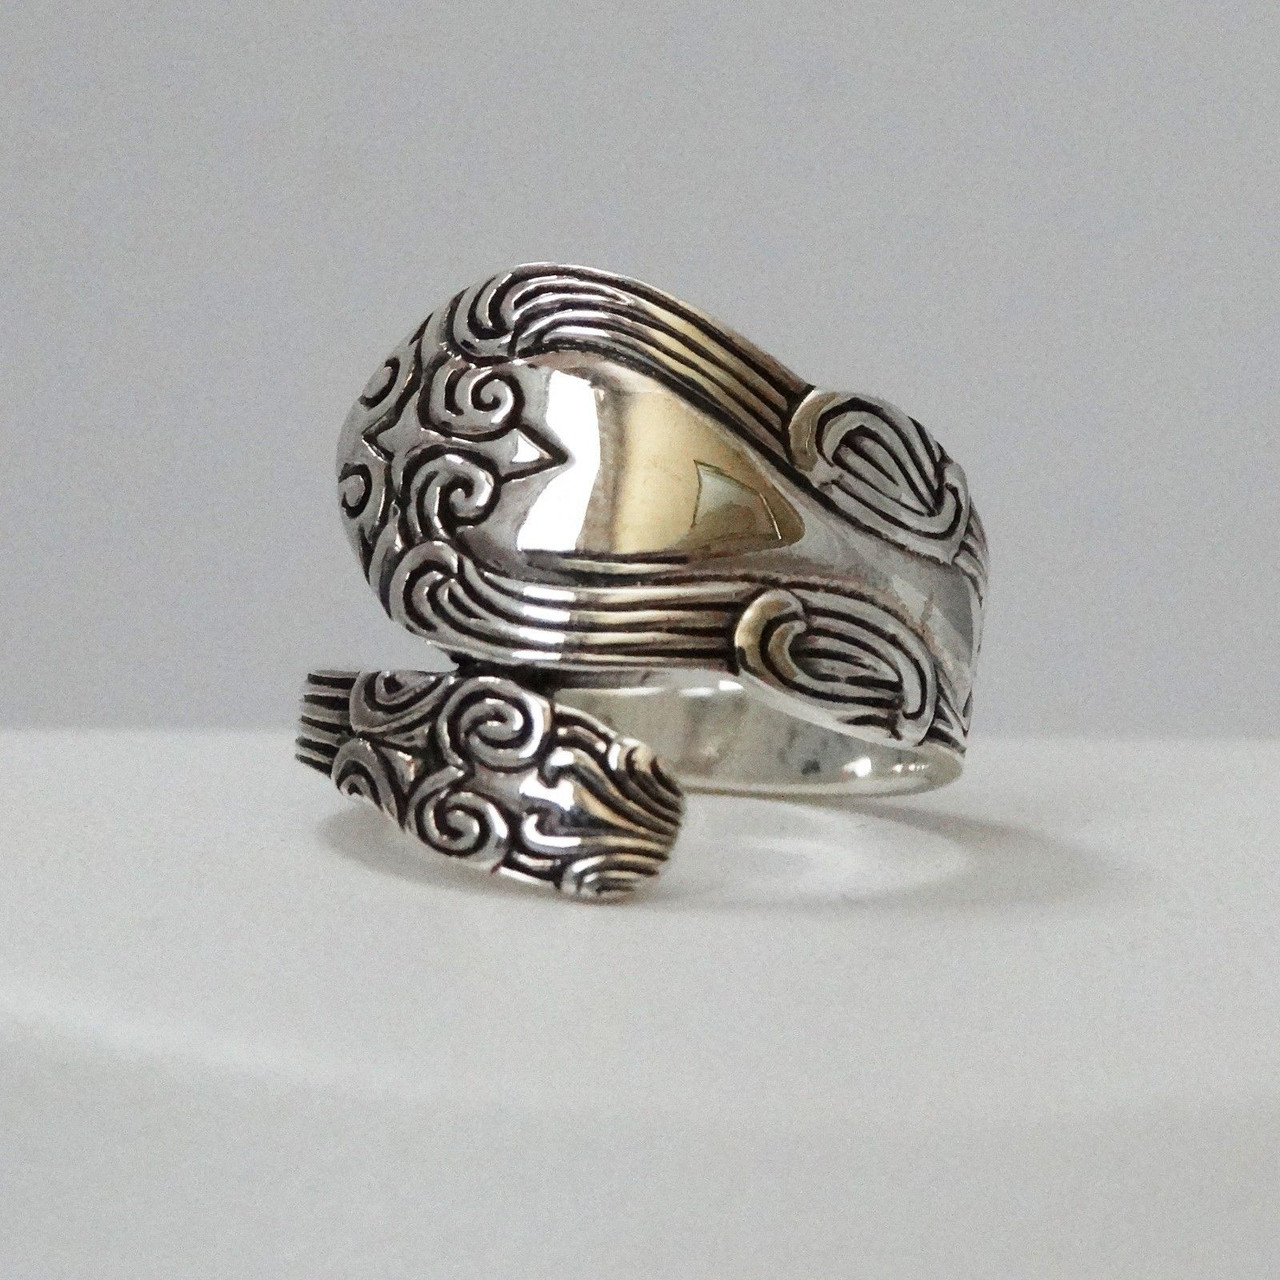 Fancy Spoon Ring in 925 Sterling Silver